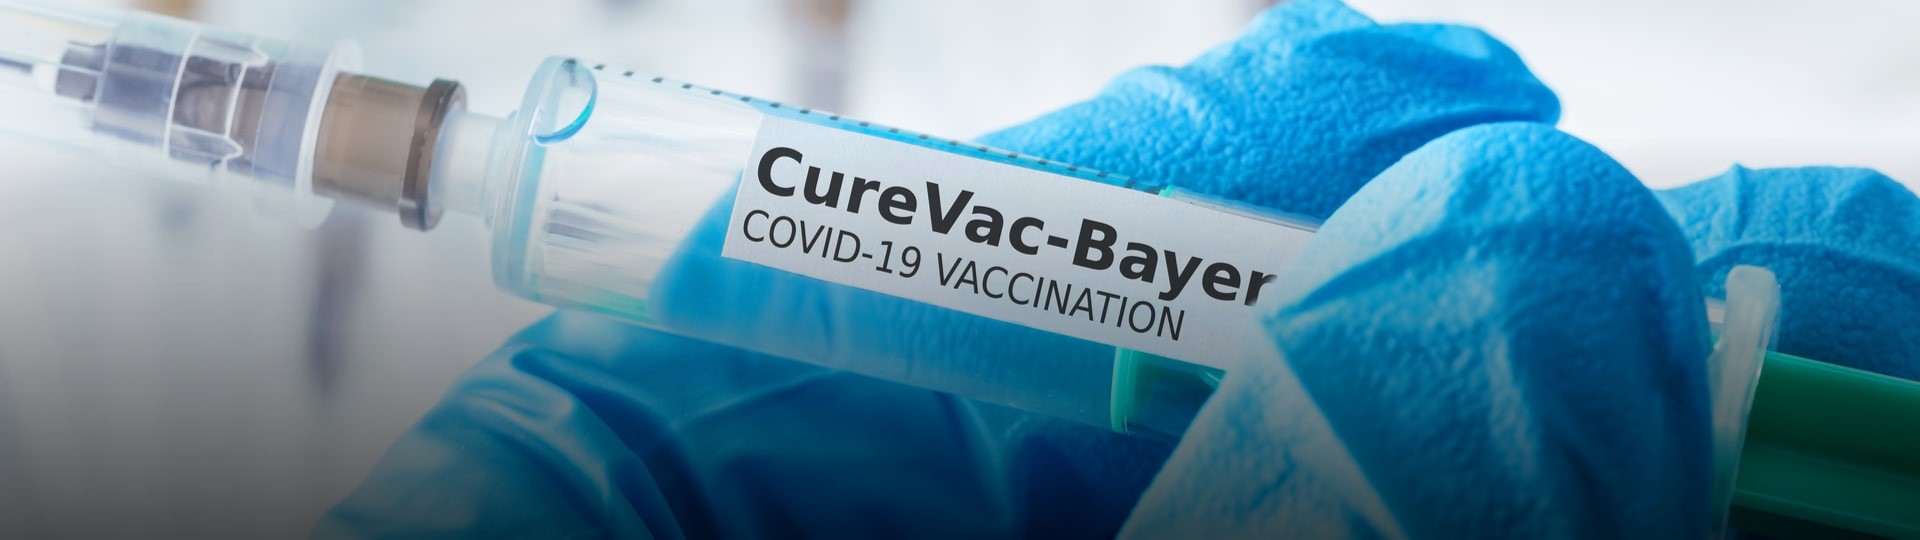 Bayer chce vyrábět vakcínu od firmy CureVac